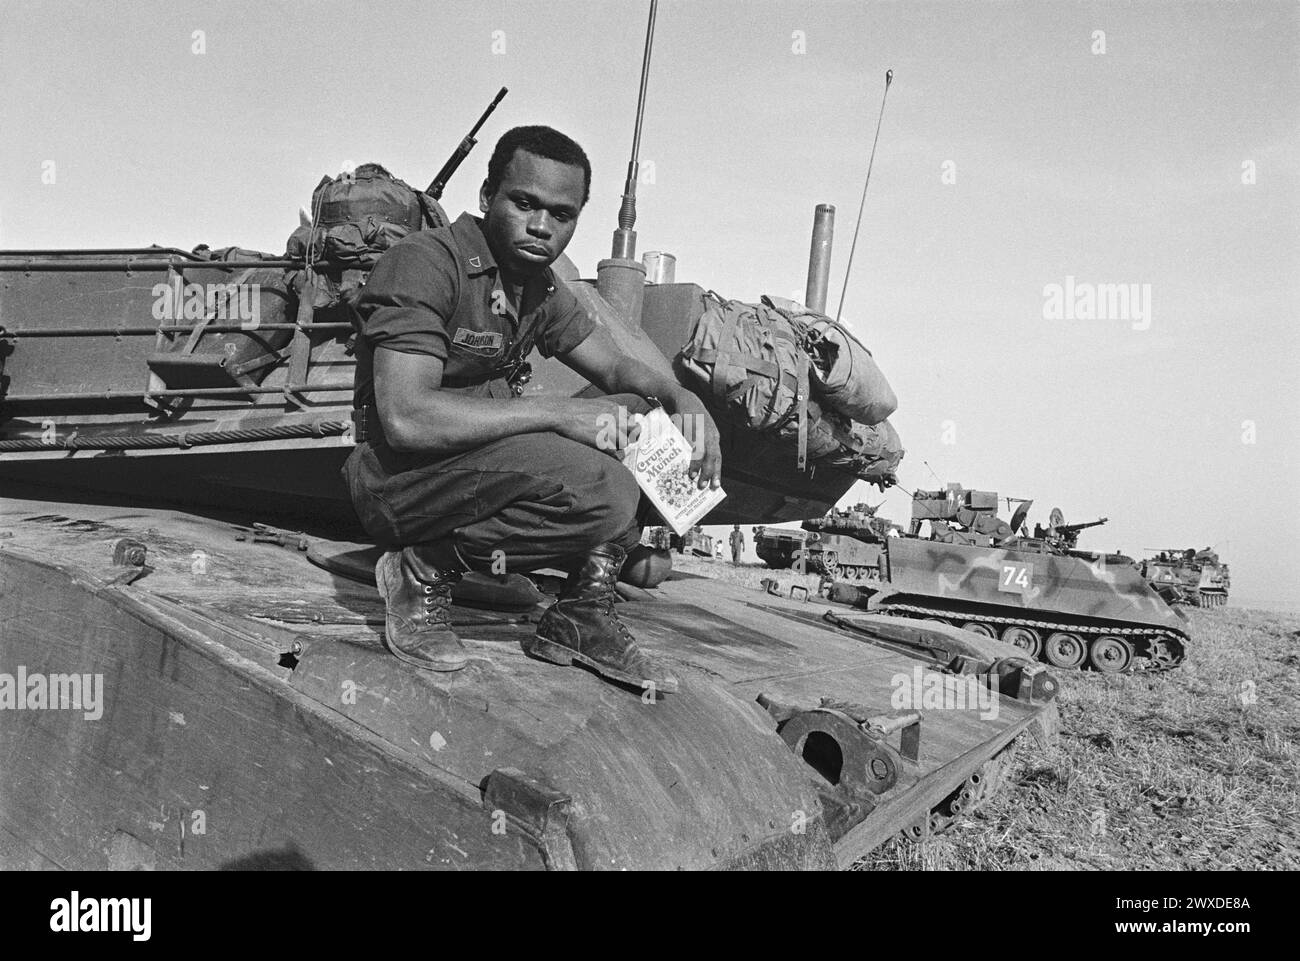 - NATO exercises in Germany, driver of a US Army M 1 Abrams tank (October 1983)   - esercitazioni NATO in Germania, conduttore di un carro armato M 1 Abrams dell'US Army (ottobre 1983) Stock Photo